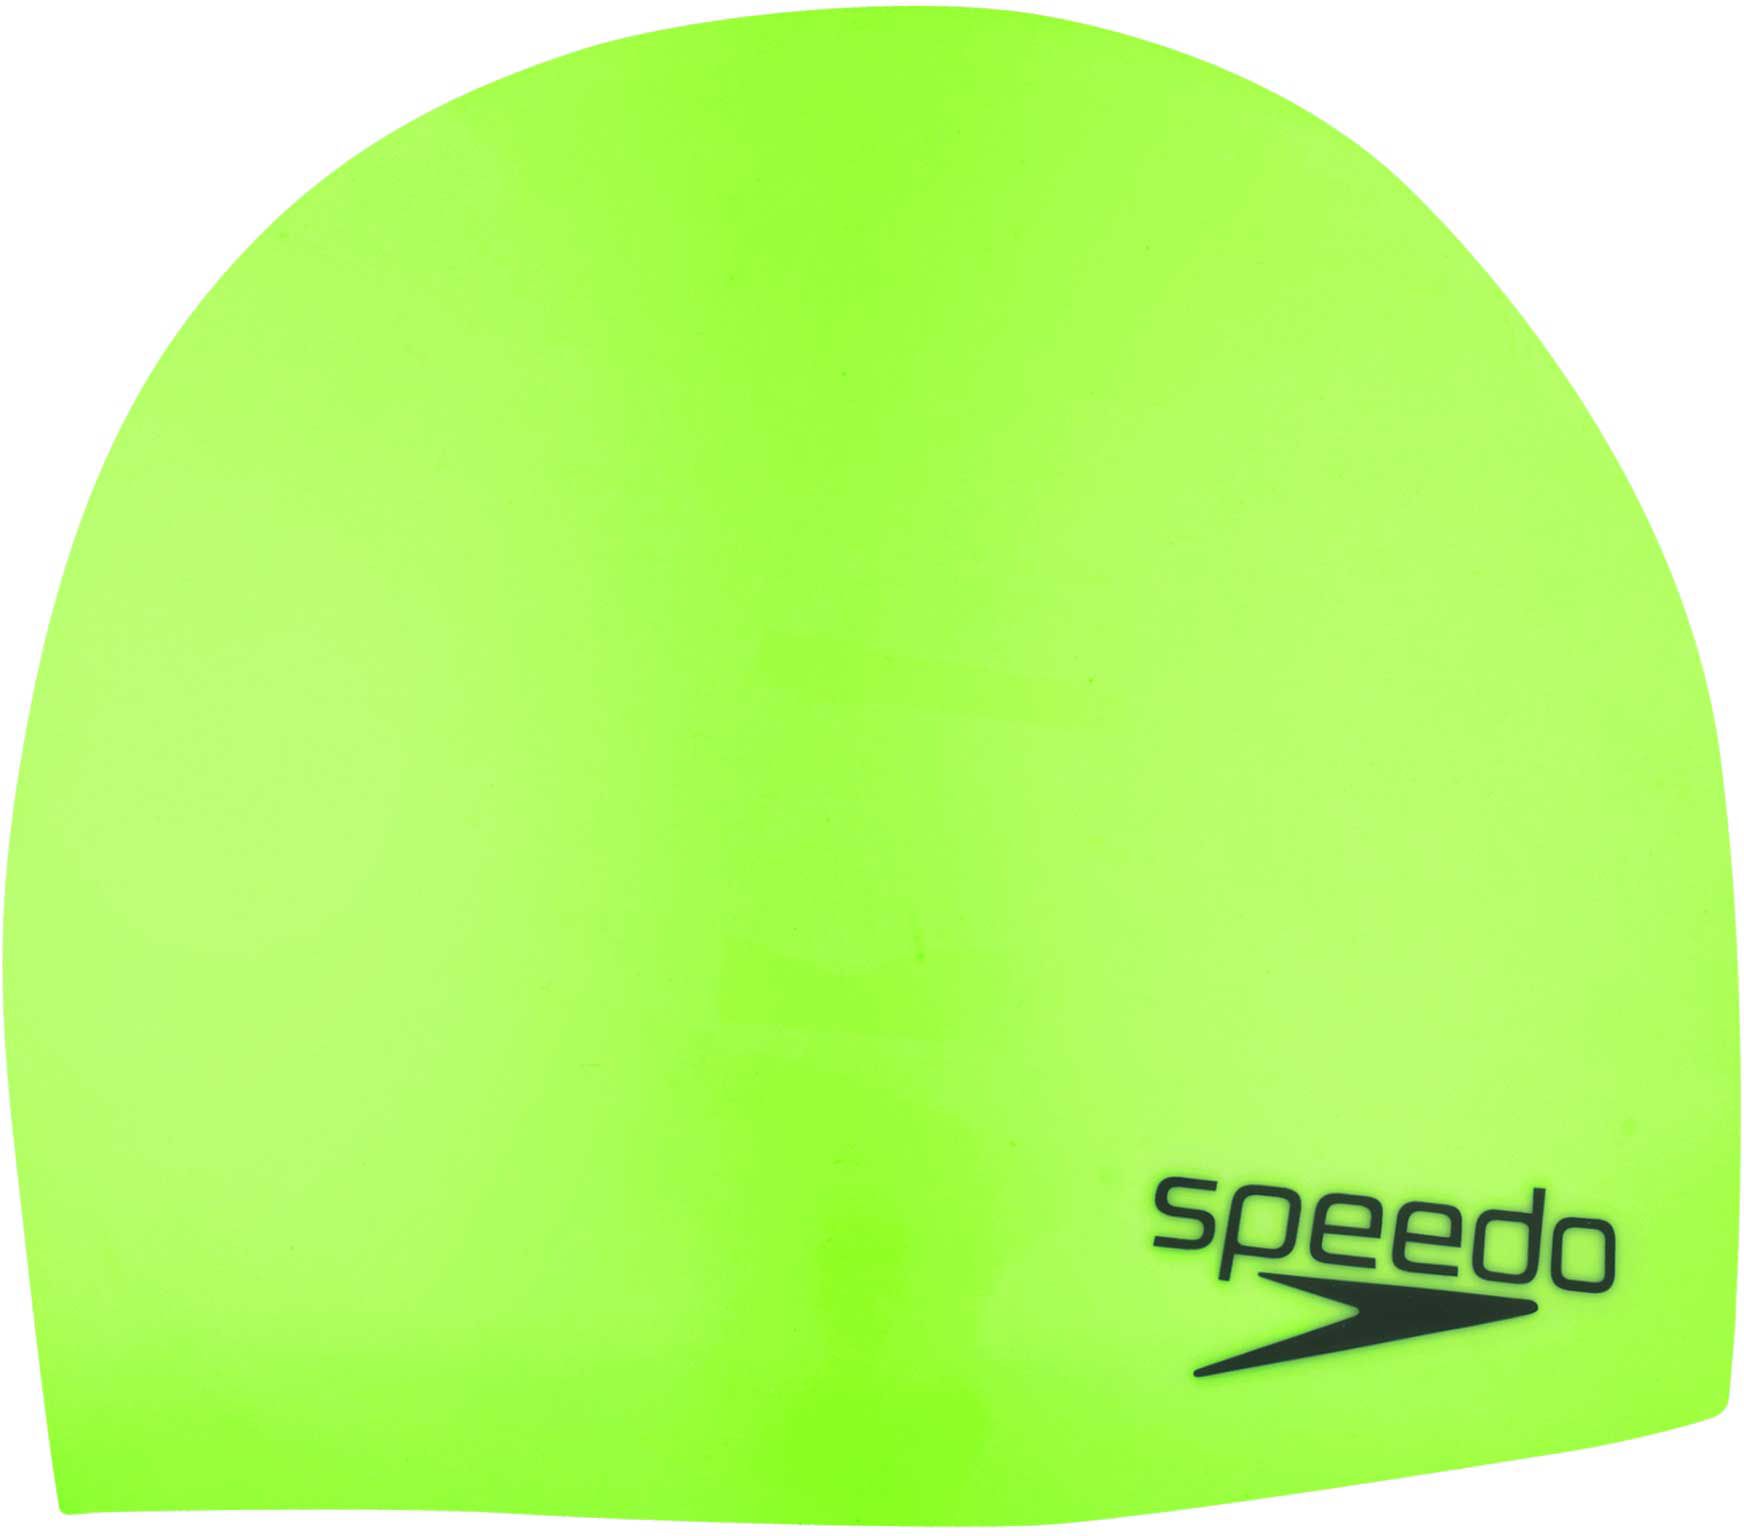 Speedo Elastomeric Silicone Swim Cap 